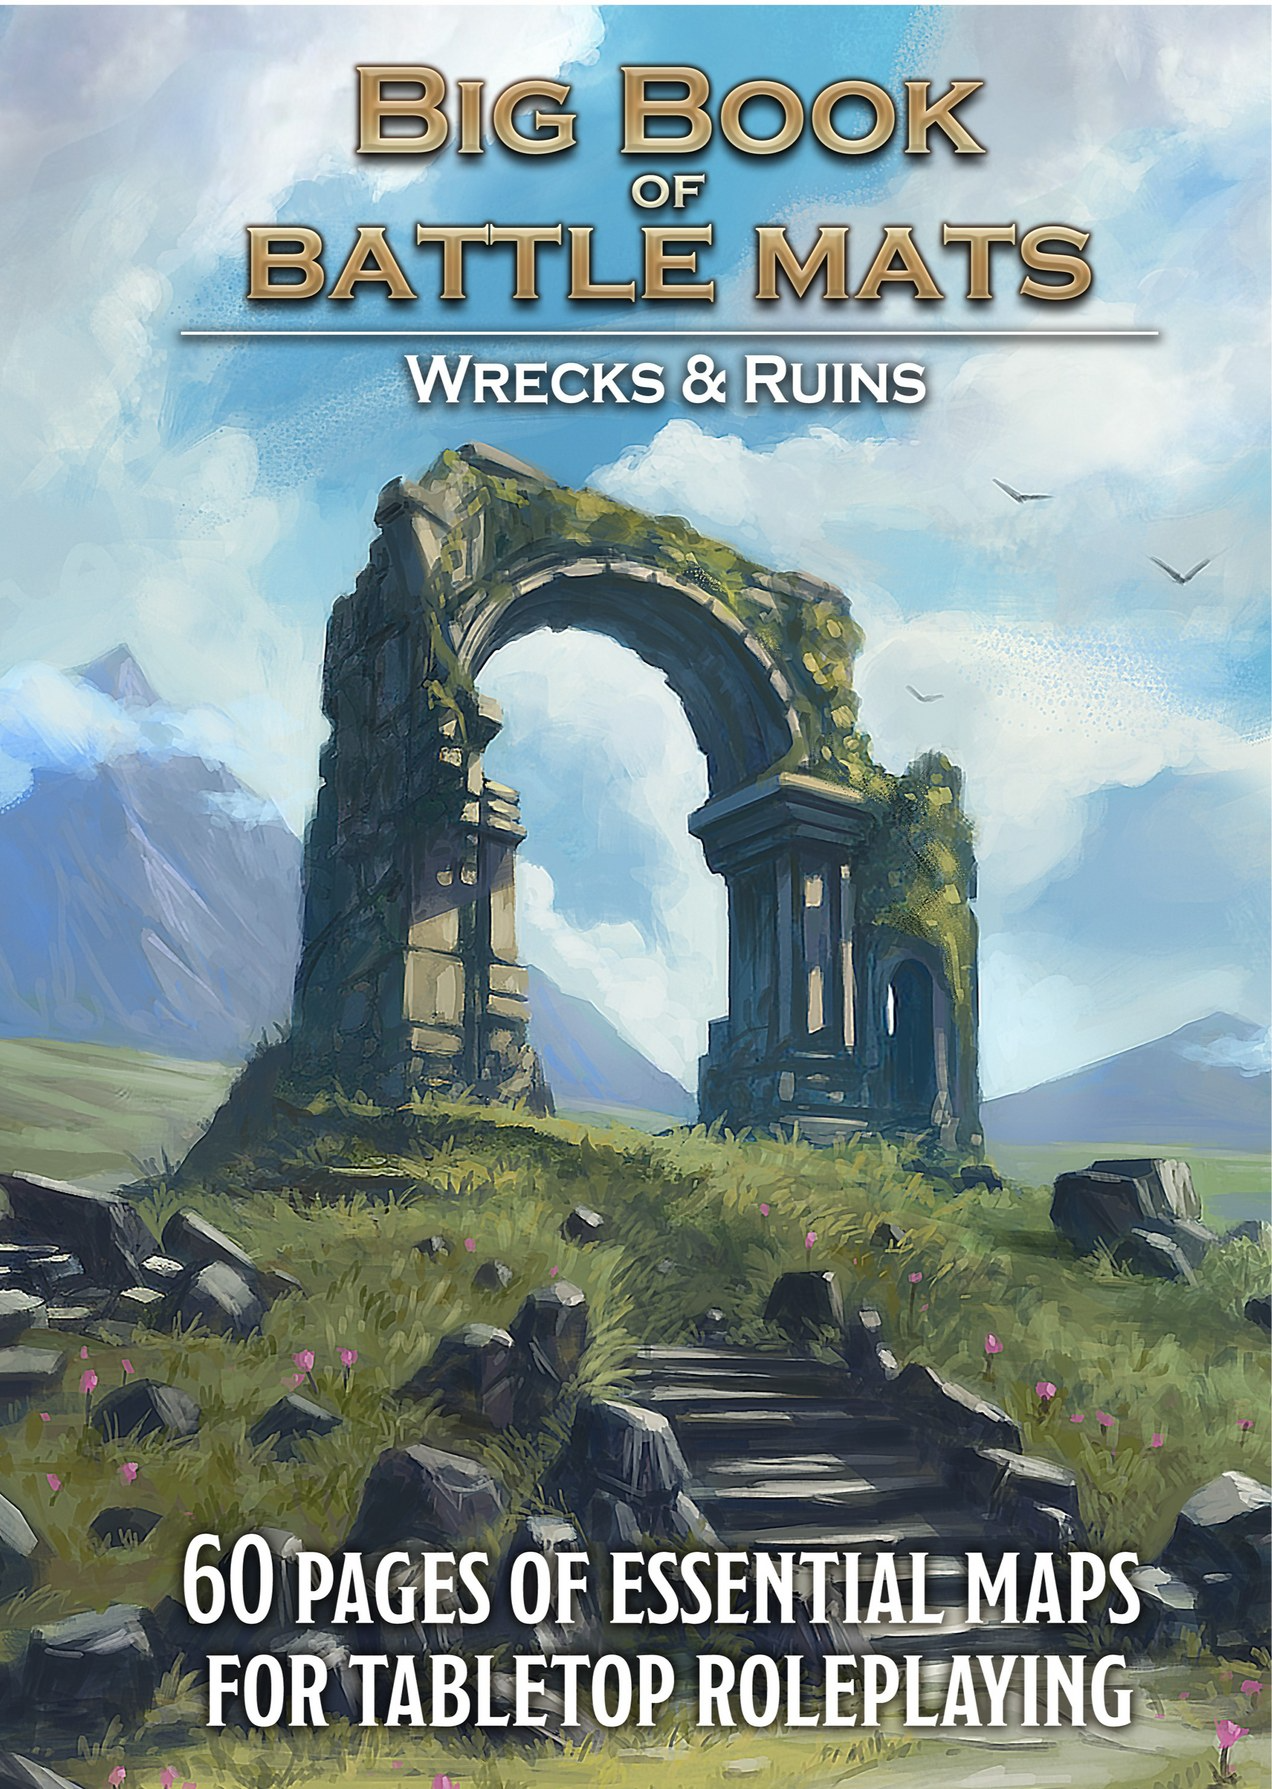 Big Book of Battle Mats - Wild Wrecks & Ruins